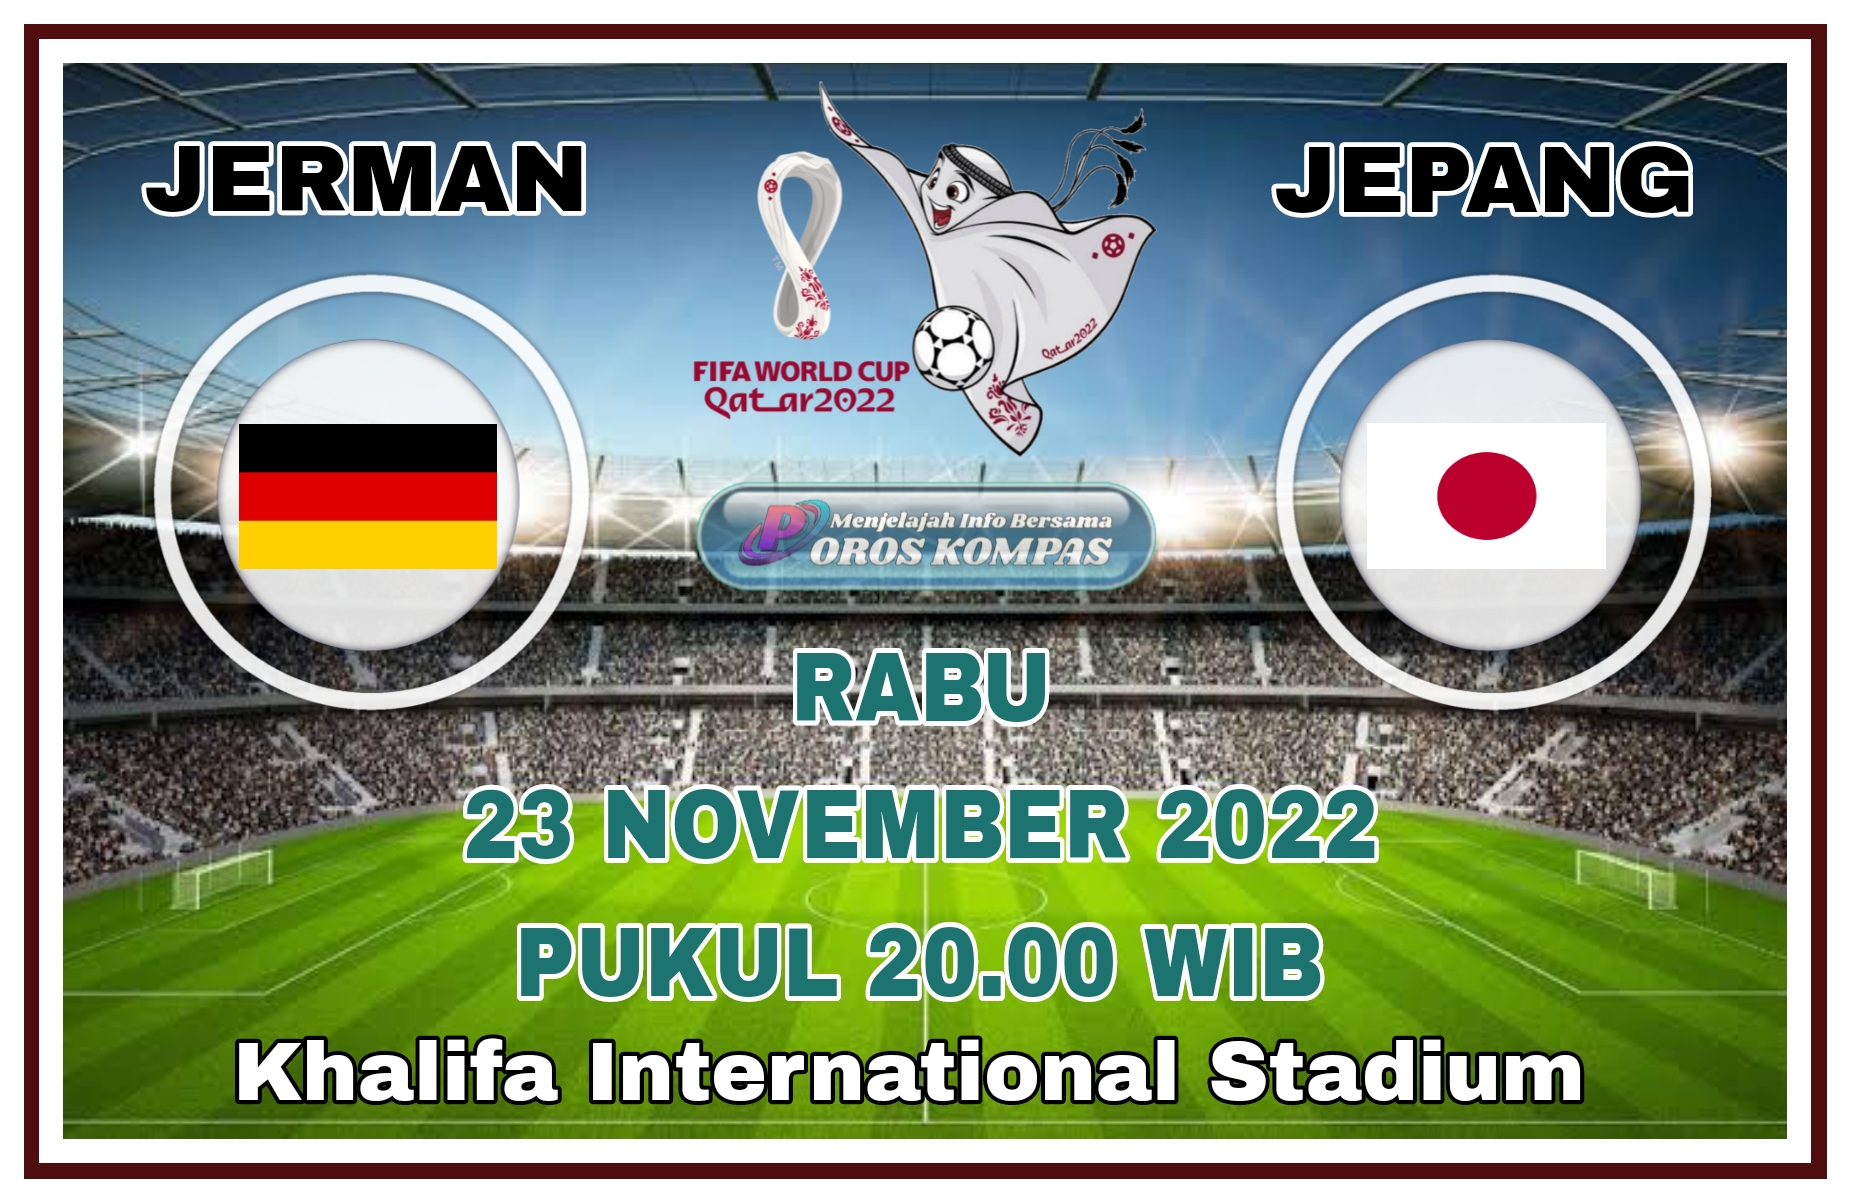 Prediksi Timnas Jerman vs Jepang di Piala Dunia 2022